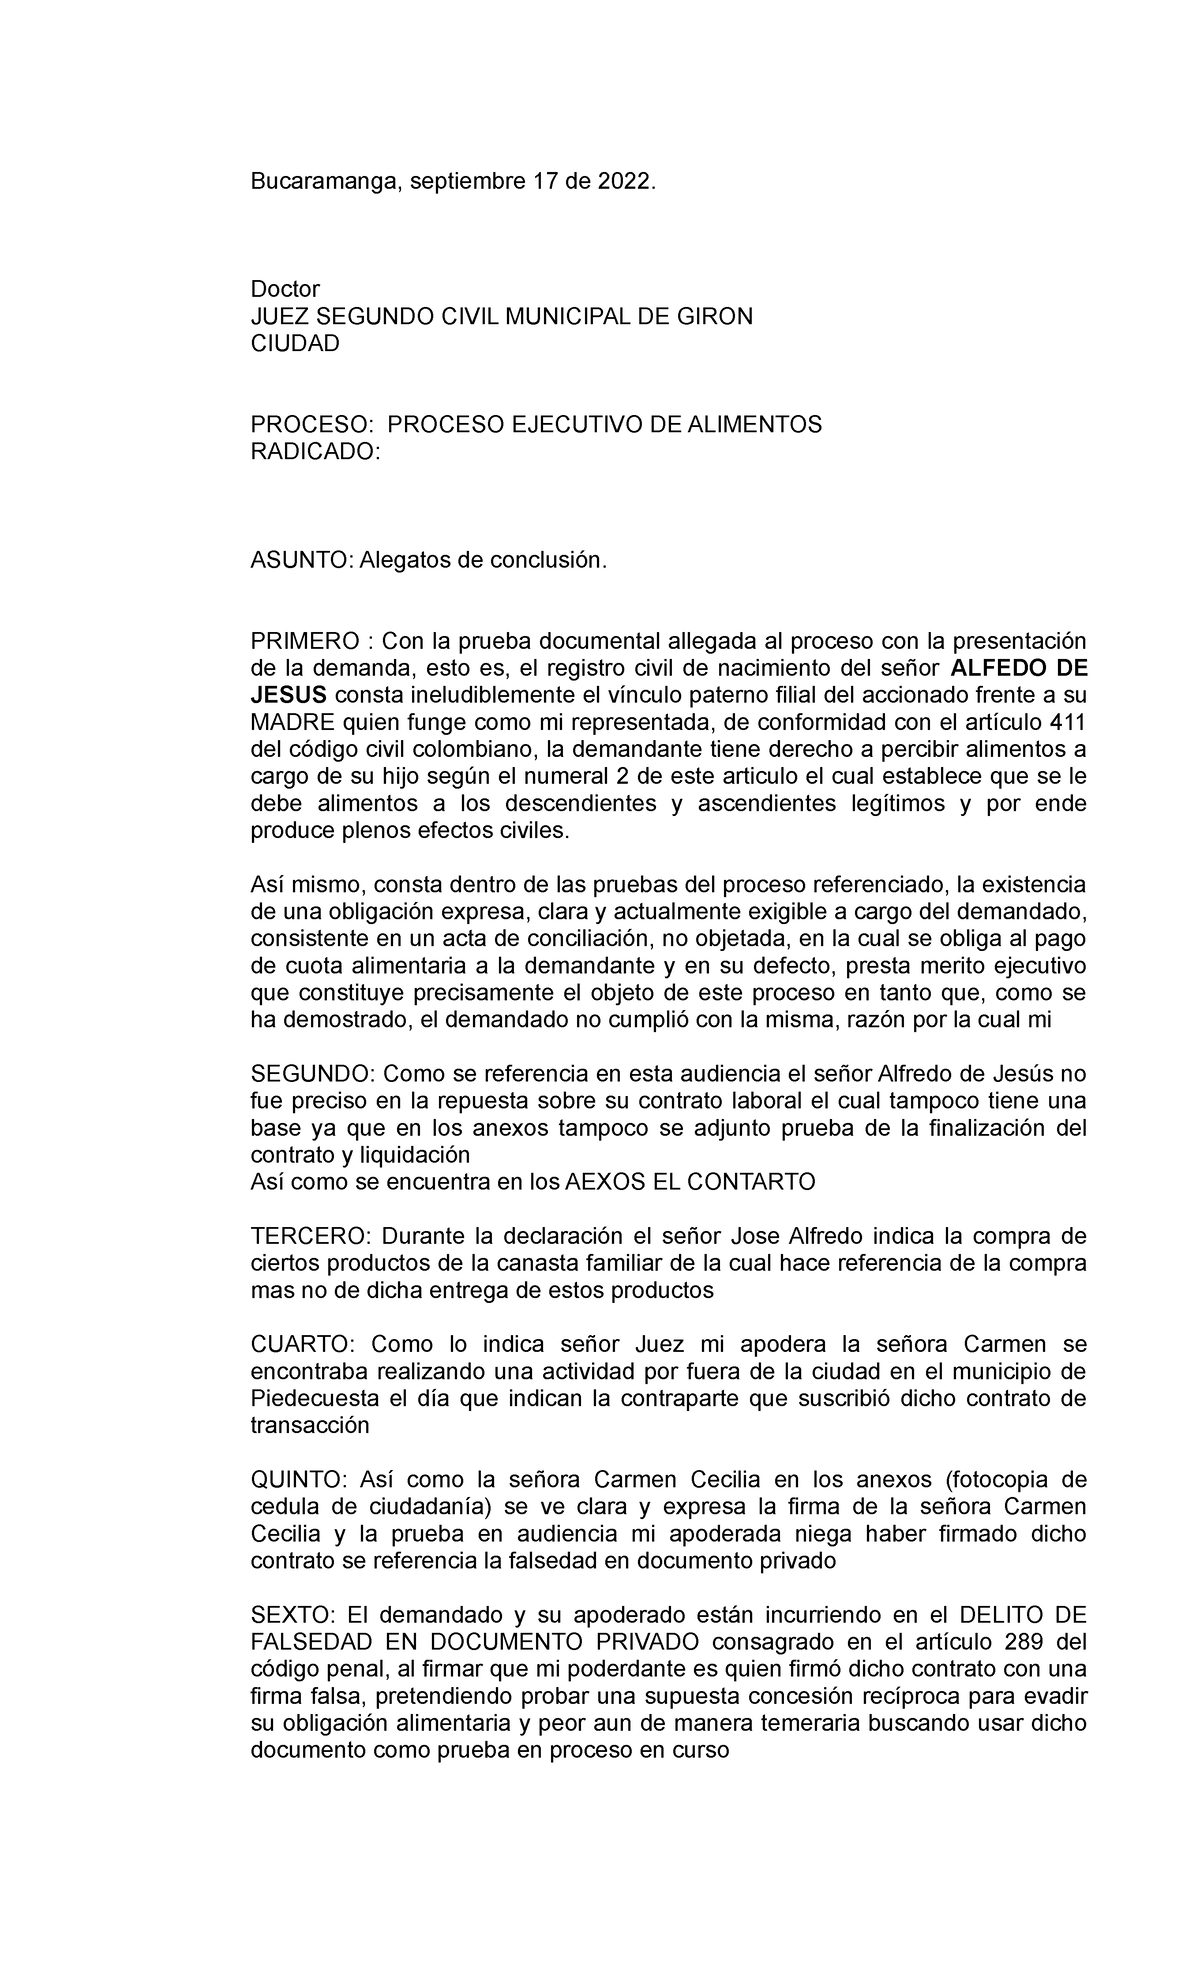 70 Modelo DE Alegatos DE Conclusion - Bucaramanga, septiembre 17 de ...